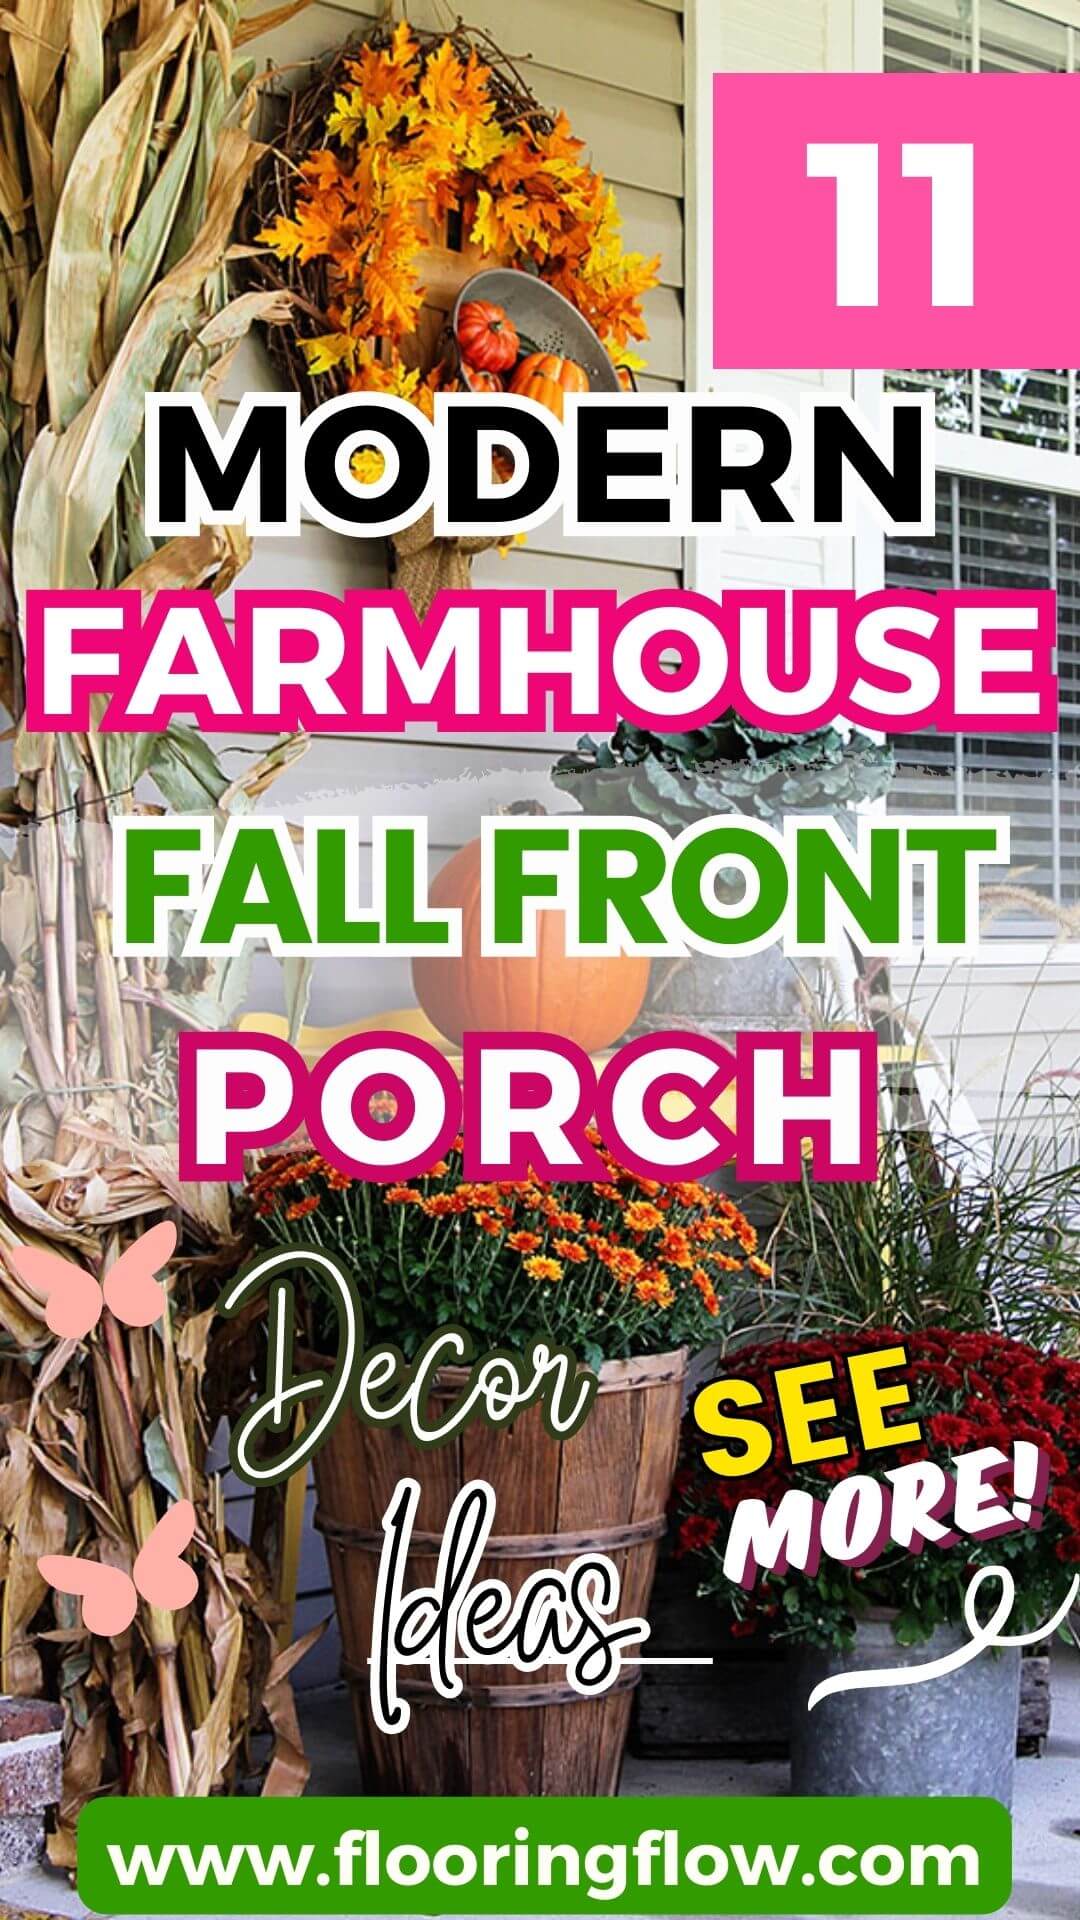 Modern Farmhouse Fall Front Porch Decor Ideas: Rustic Entryway